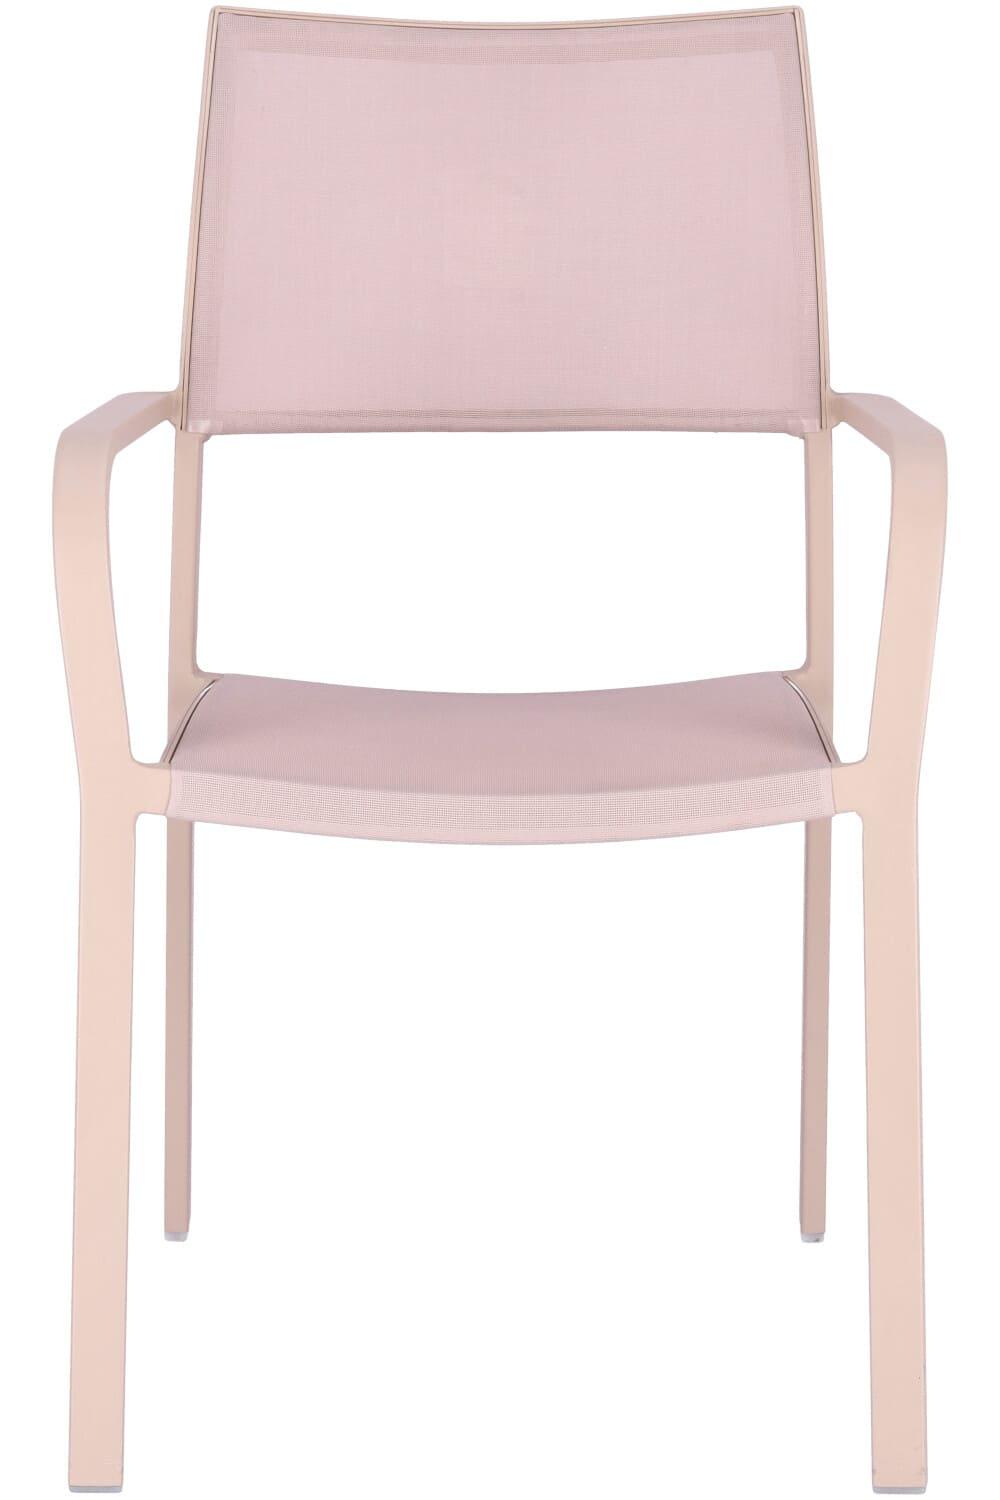 Abbildung arm chair Alexis Vorderansicht